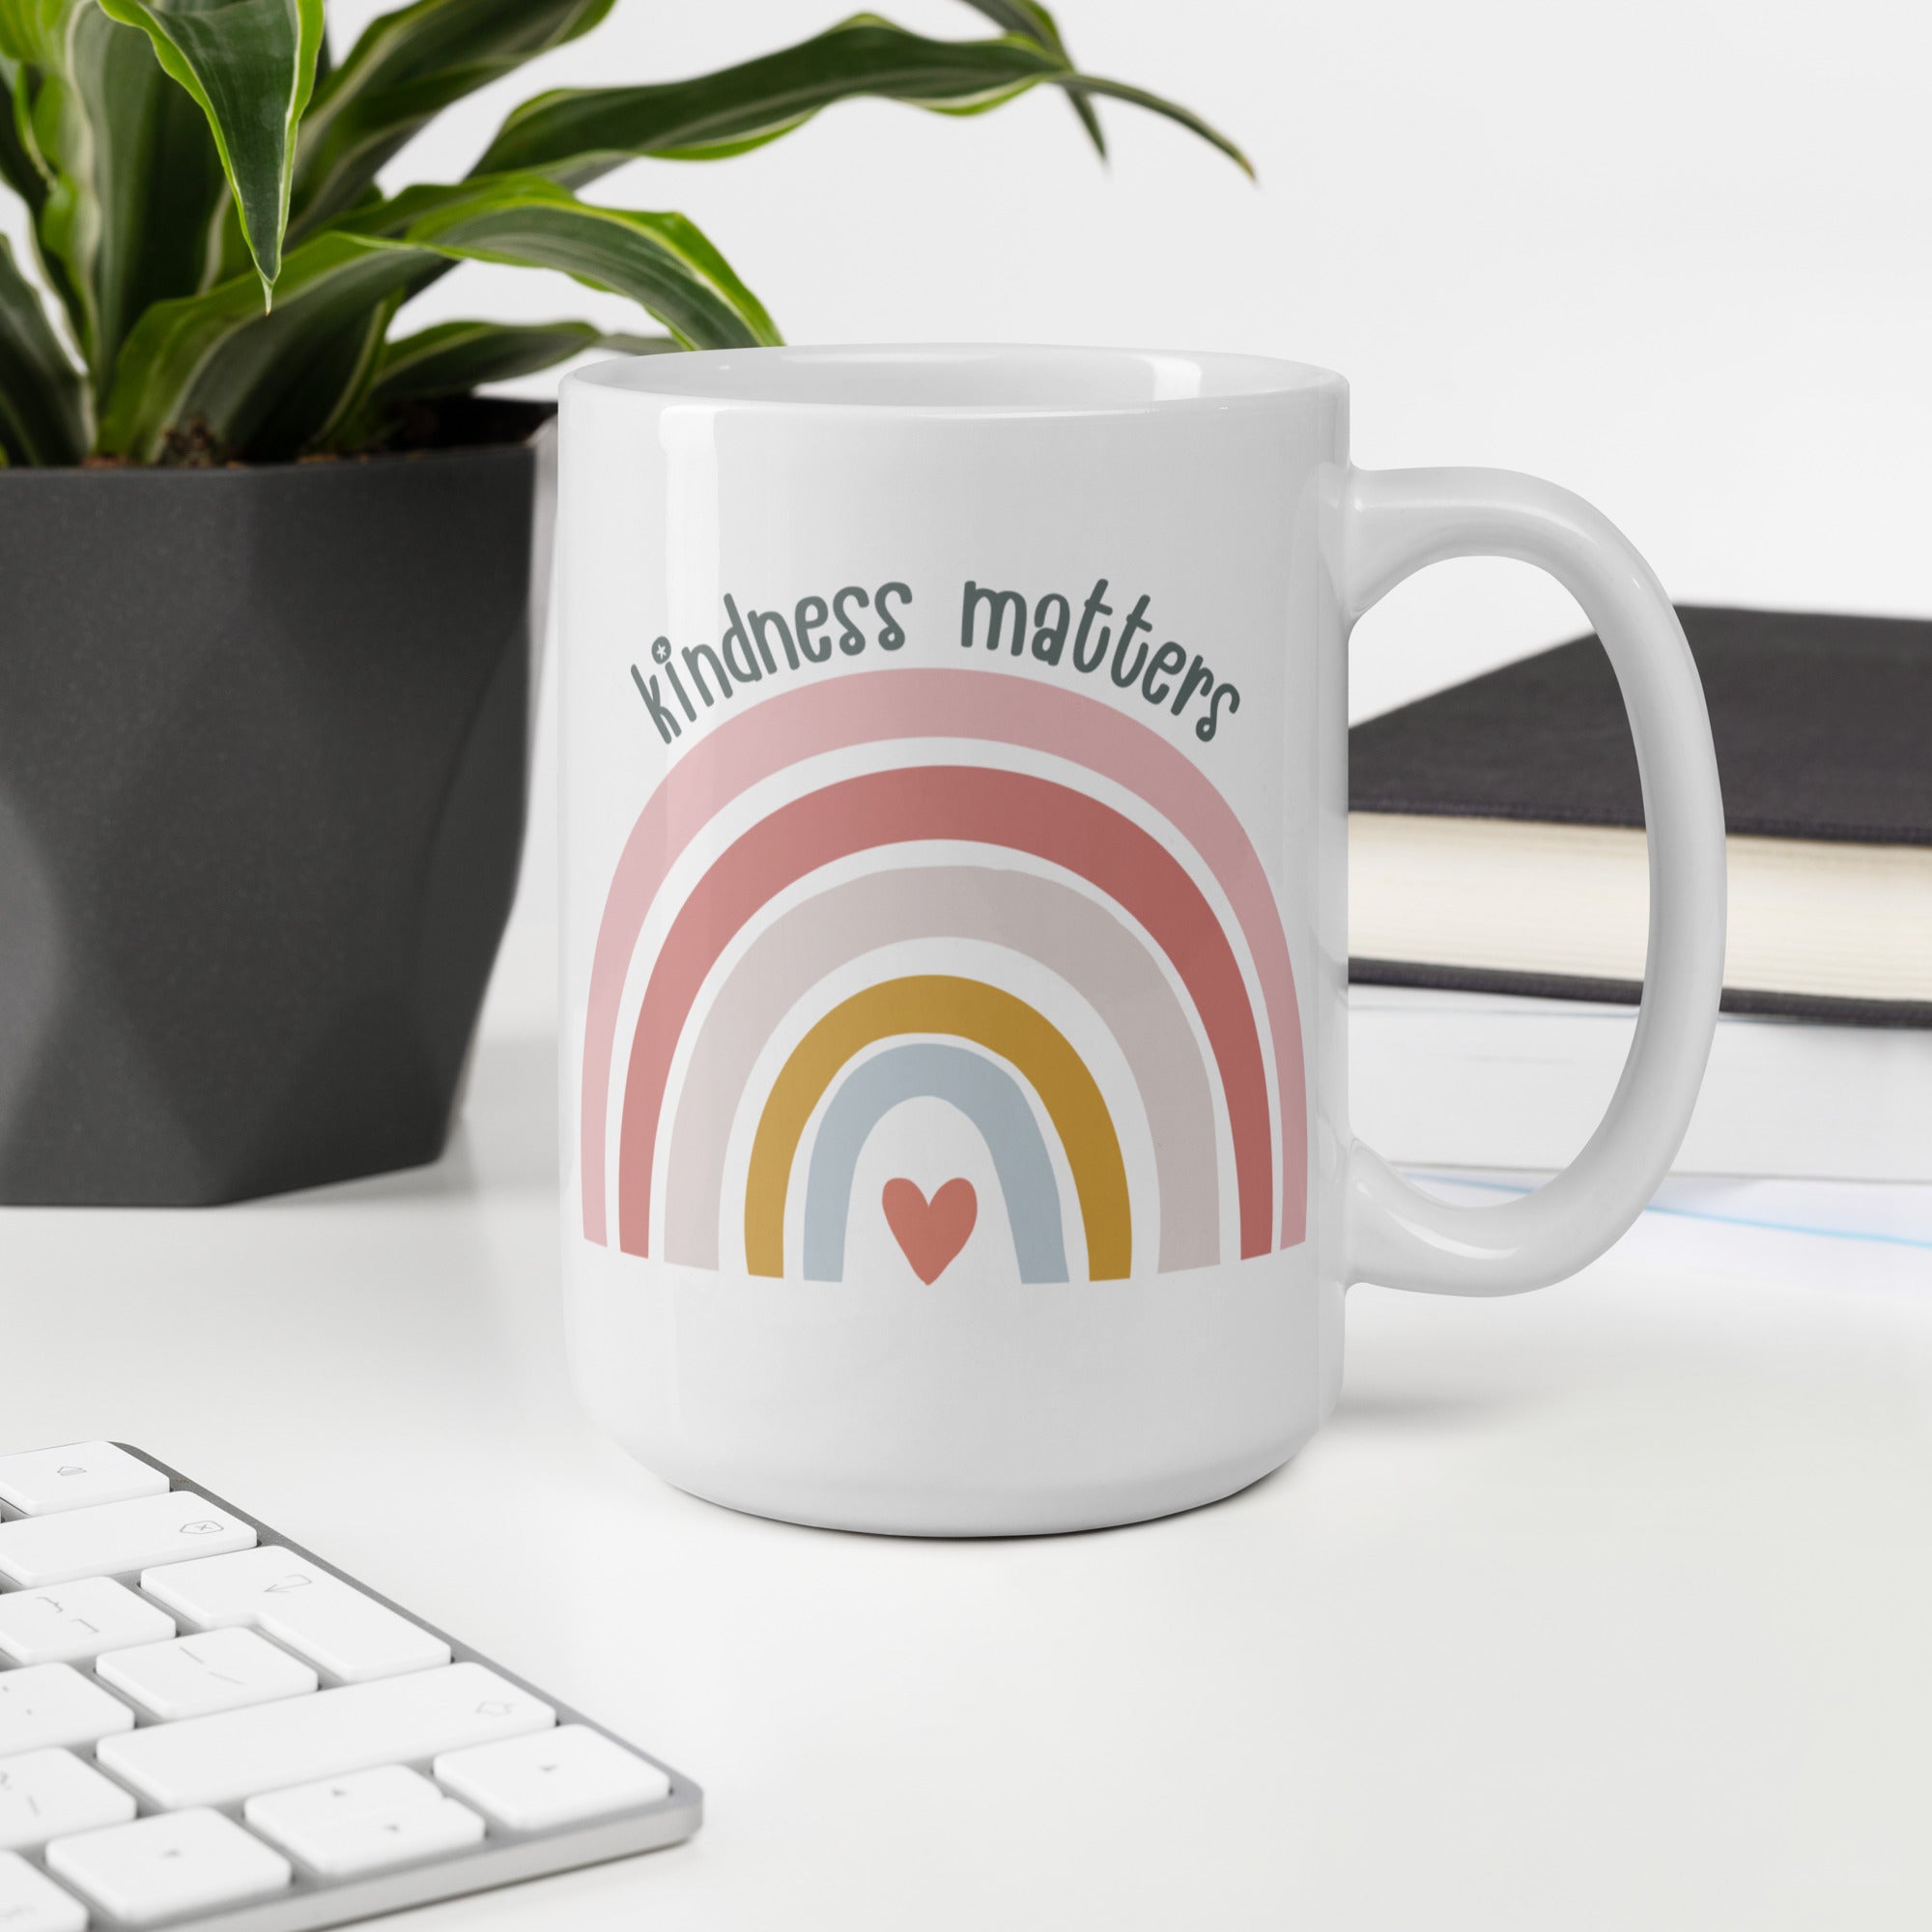 Kindness Matters - White Glossy Mug